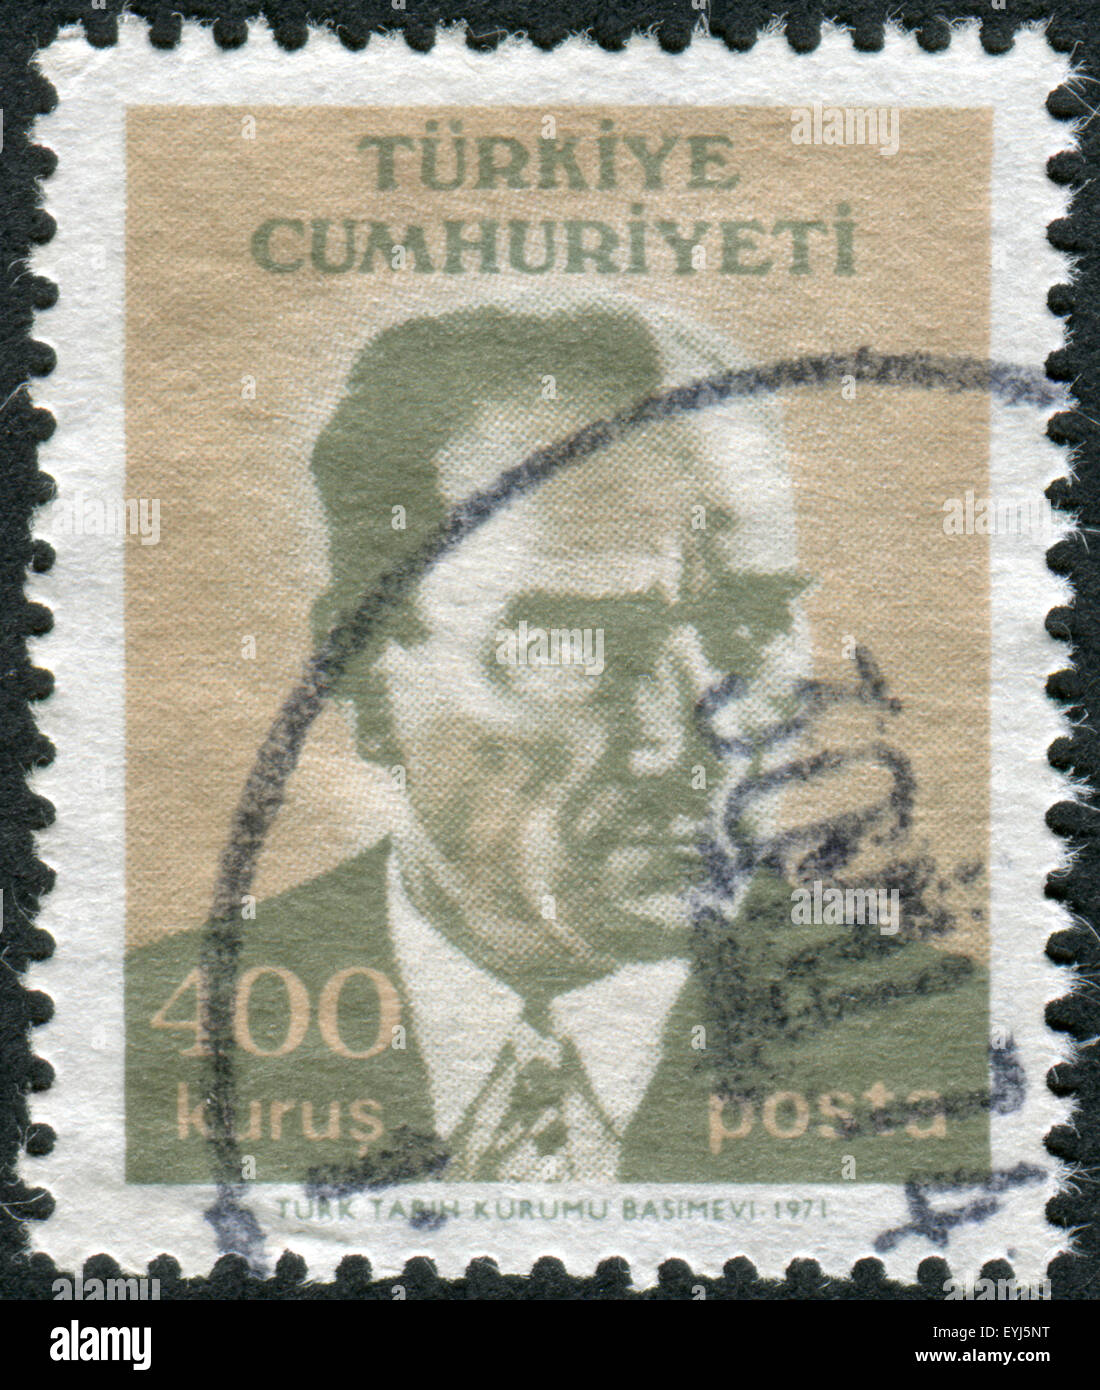 Briefmarke gedruckt in der Türkei, dargestellt der 1. Präsident der Türkei, Mustafa Kemal Pascha (Atatürk) Stockfoto